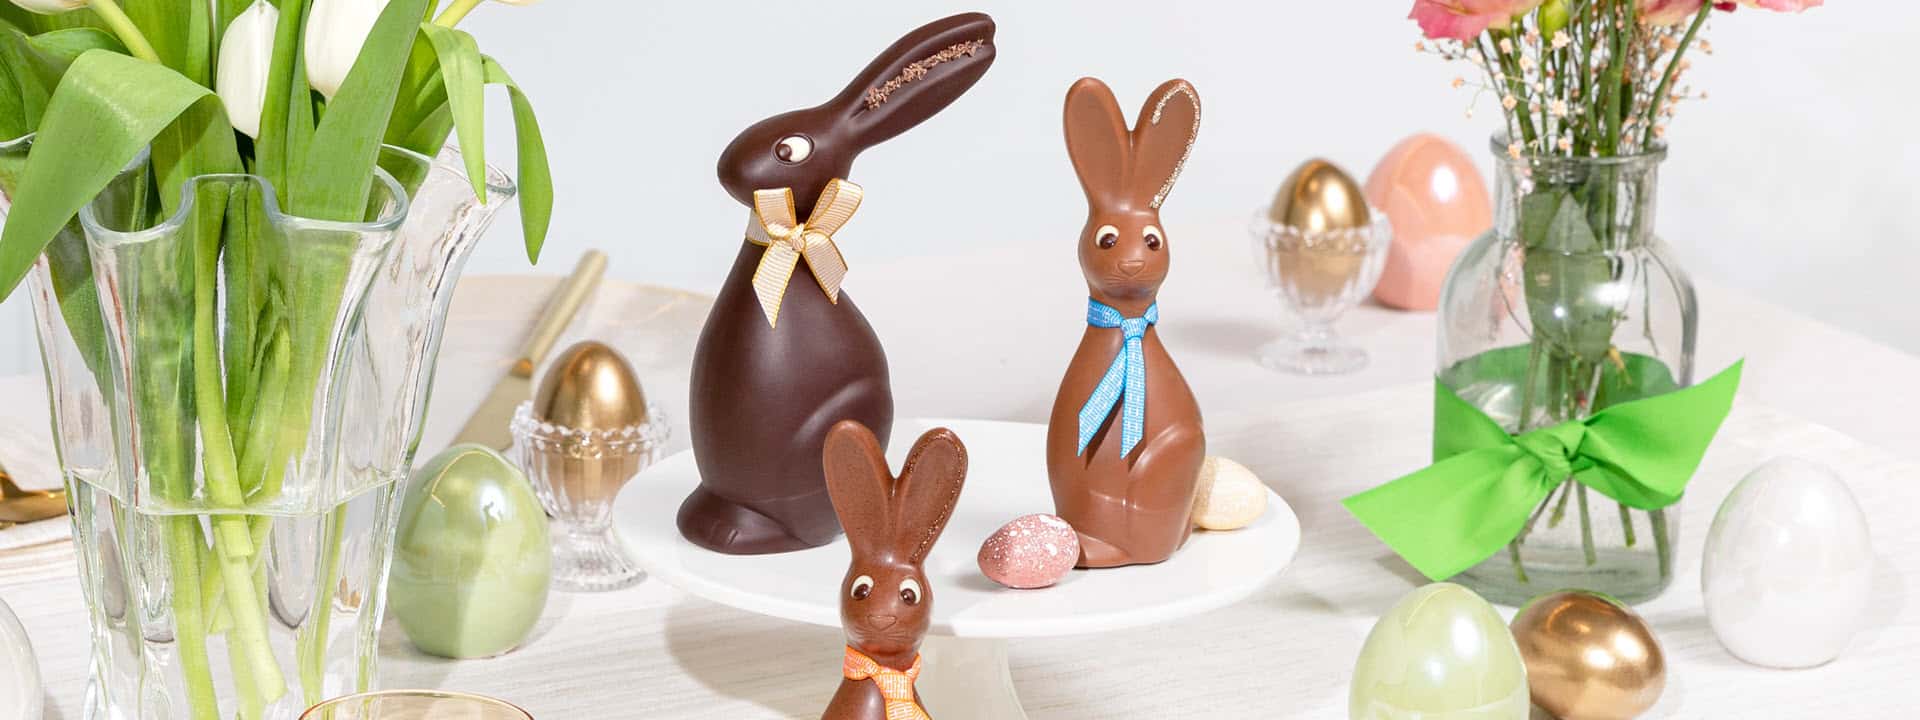 Freude teilen – Schokoladige Ostern mit Läderach